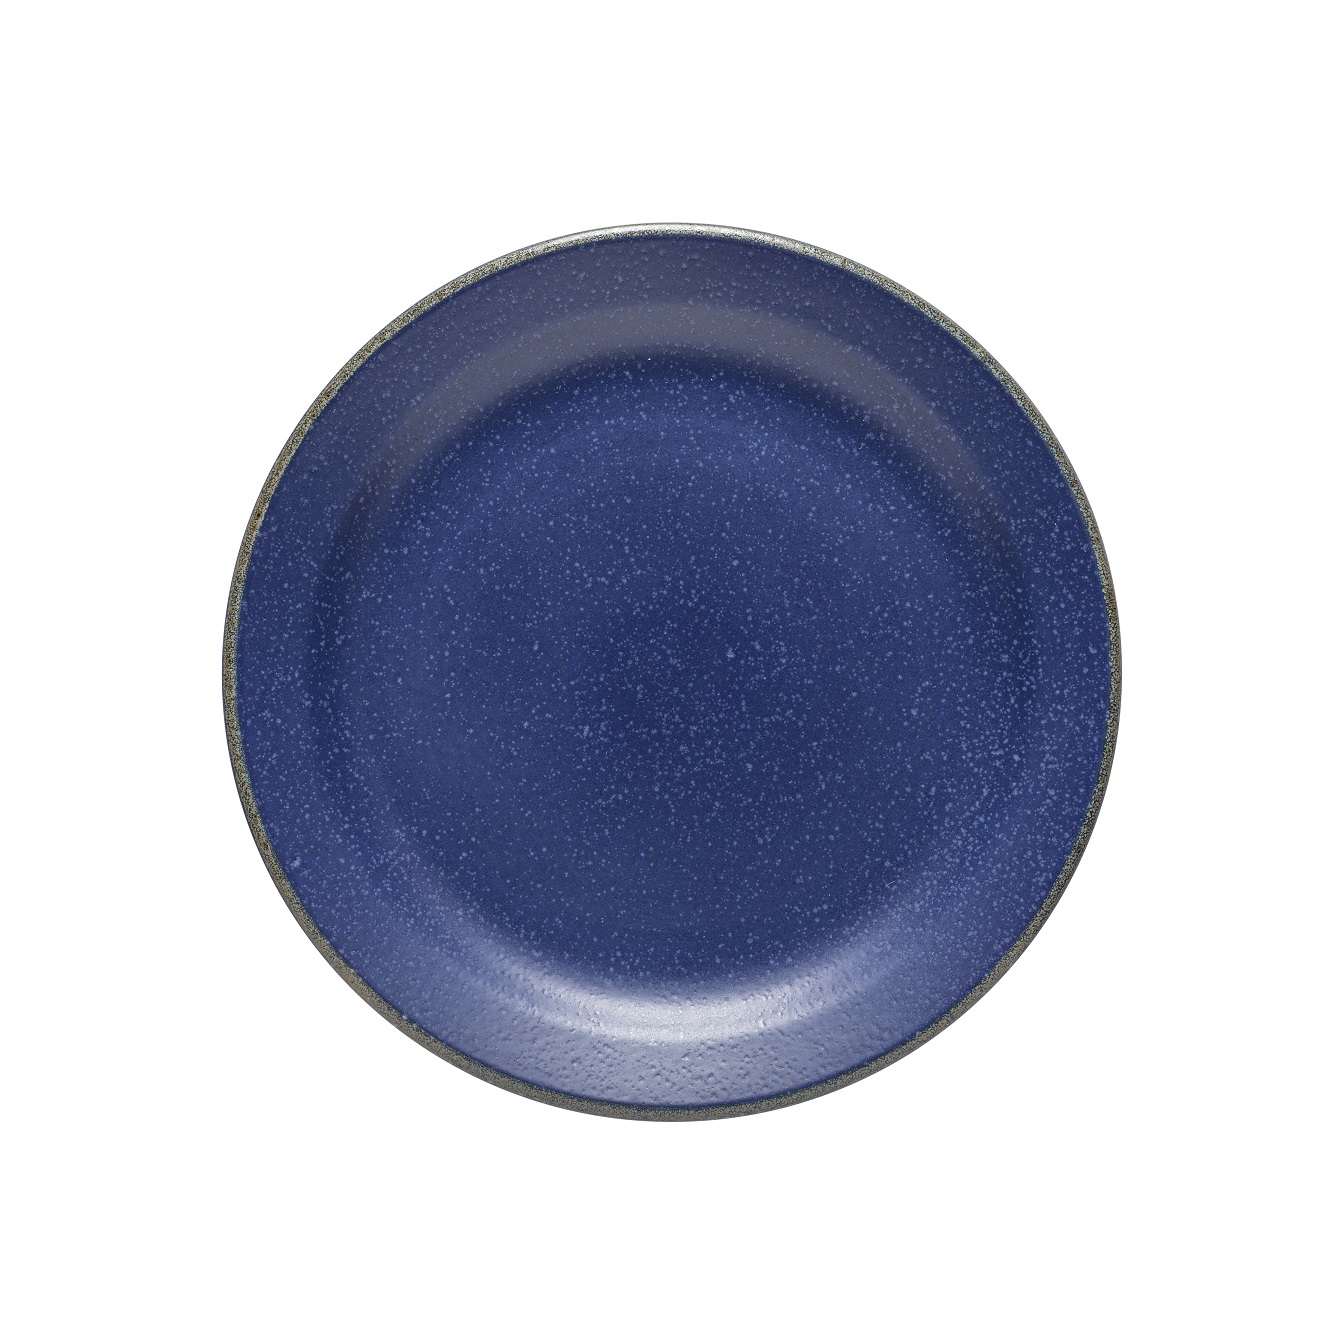 Positano Blue Dinner Plate 28cm Gift